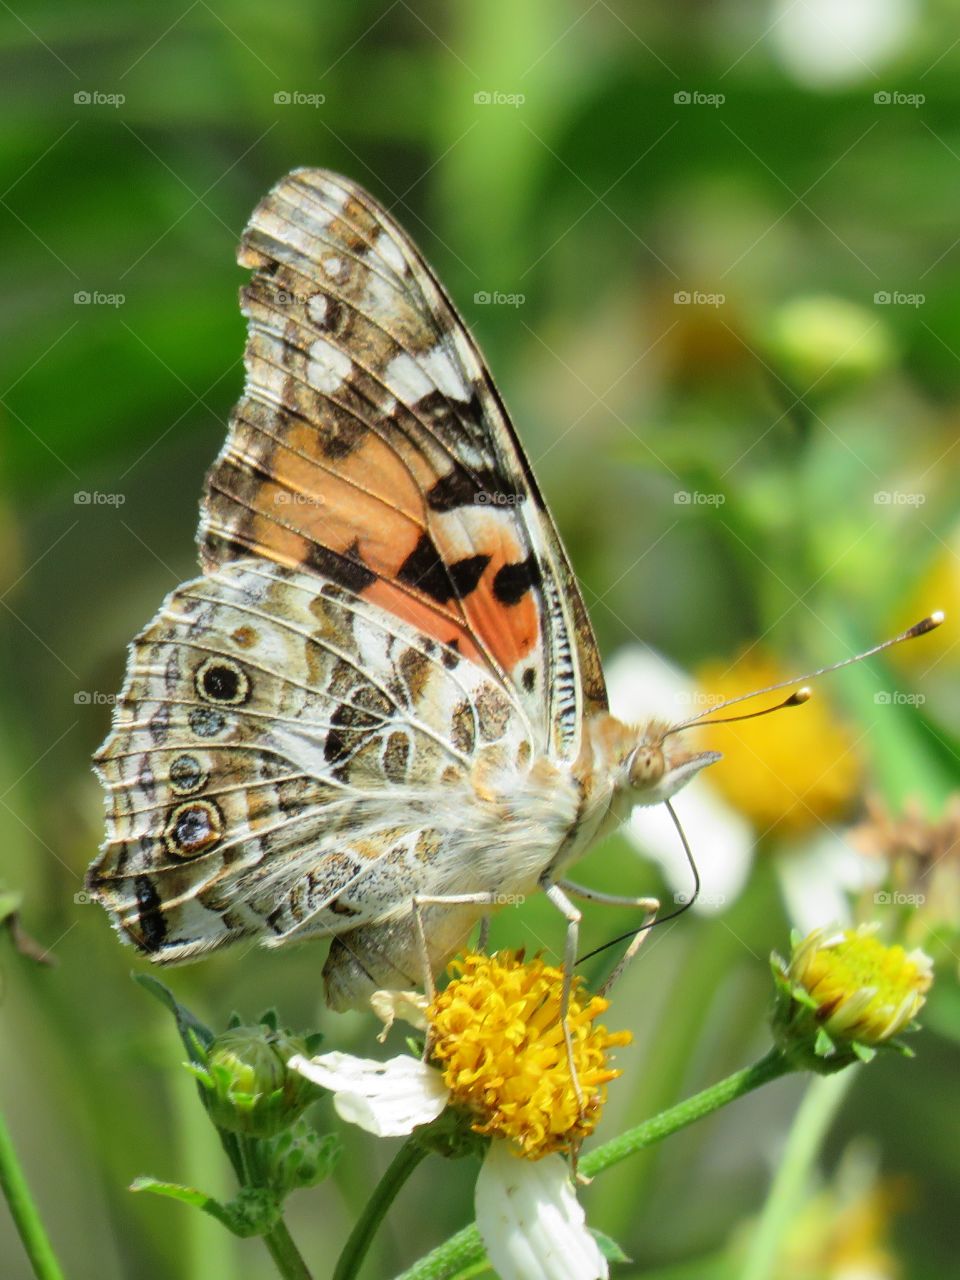 Butterfly feeding on a flower